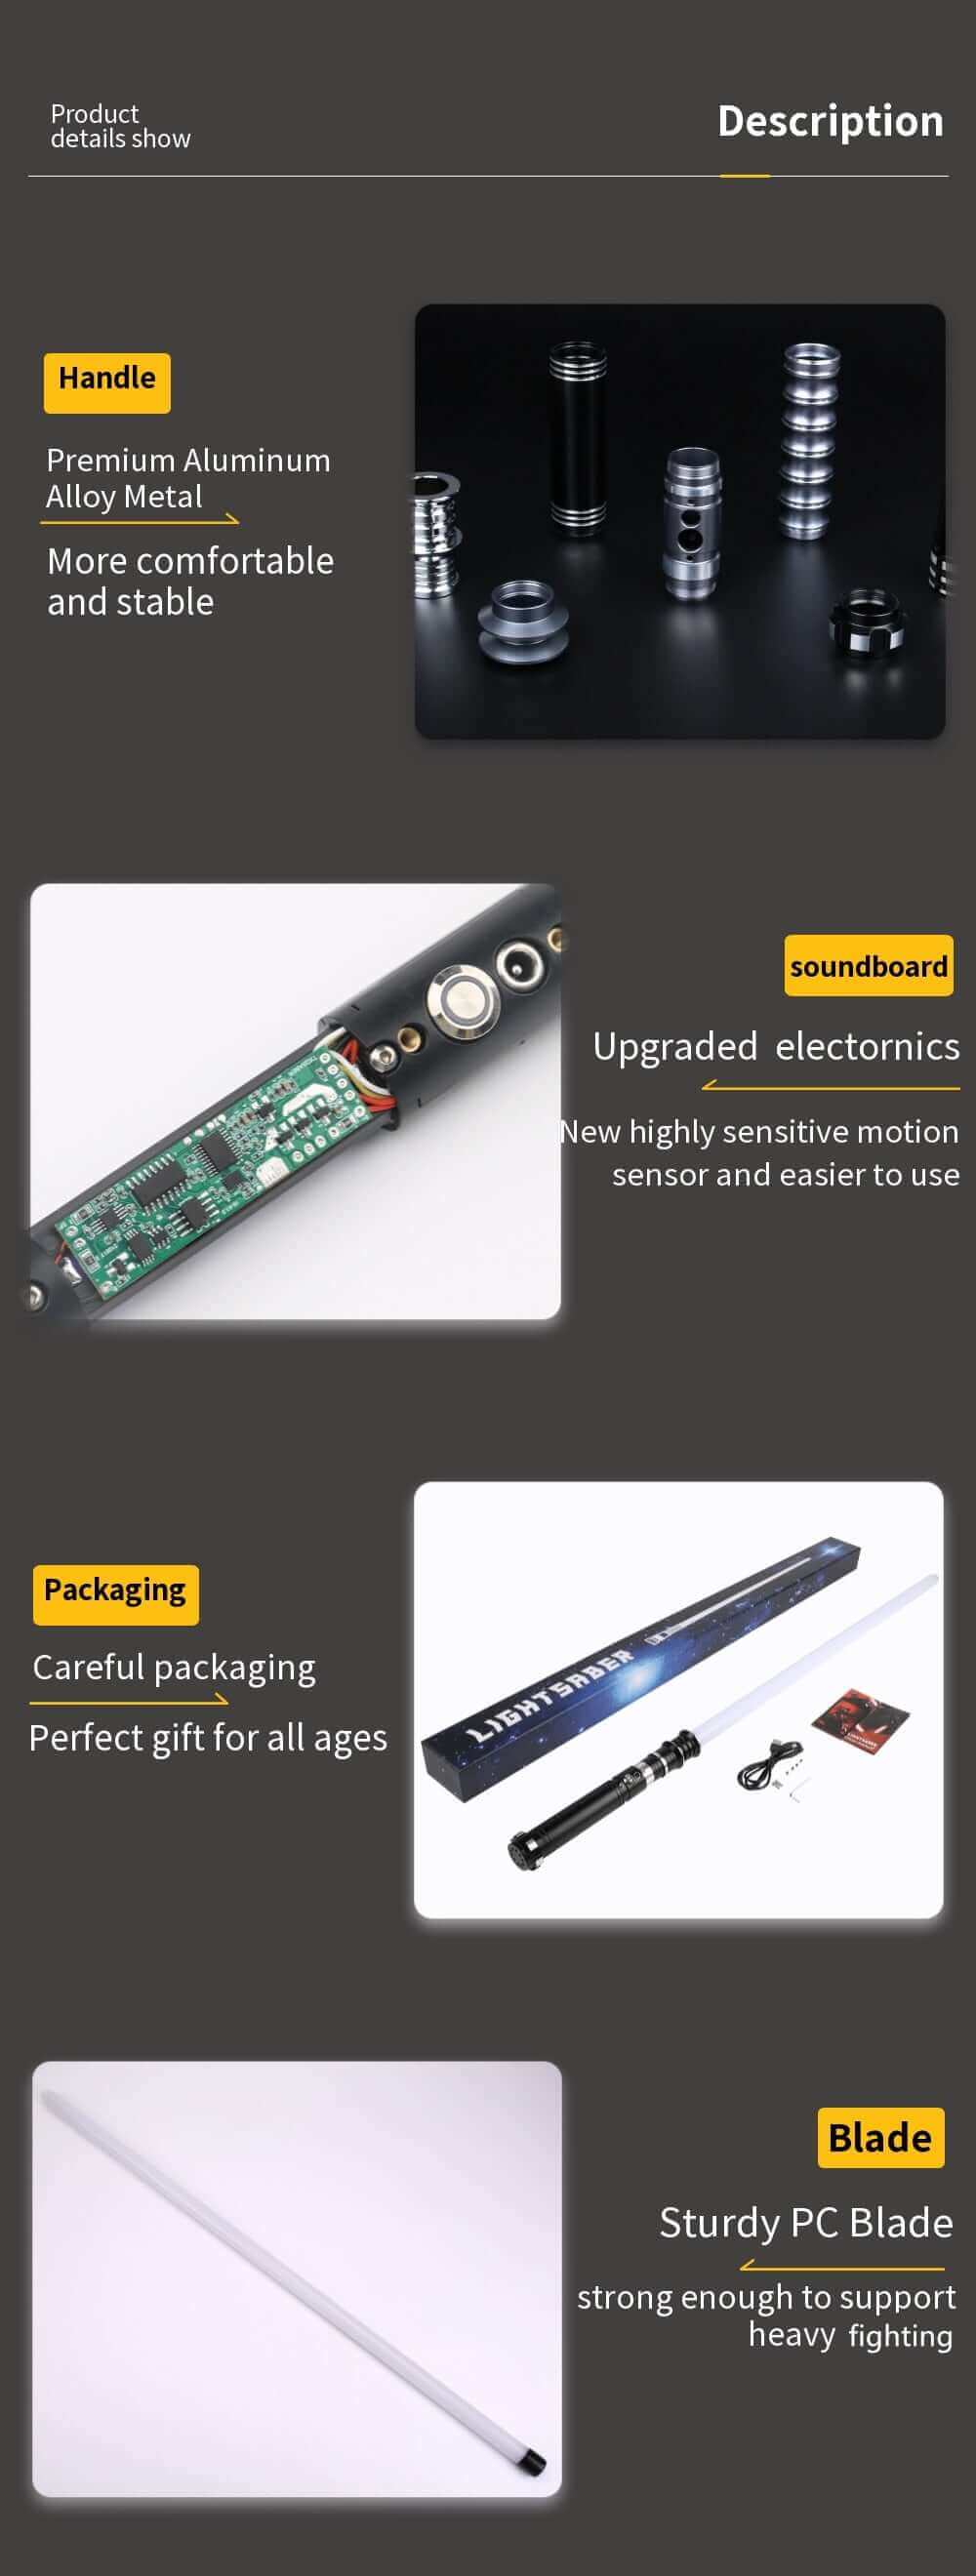 Kidstoyloverによるヘビーデューティメタルハンドル付きRGBライトセーバー-12カラーオプション、10サウンドフォント、フォースFX、ブラスターエフェクト-子供のための完璧なギフト | レーザーソード玩具